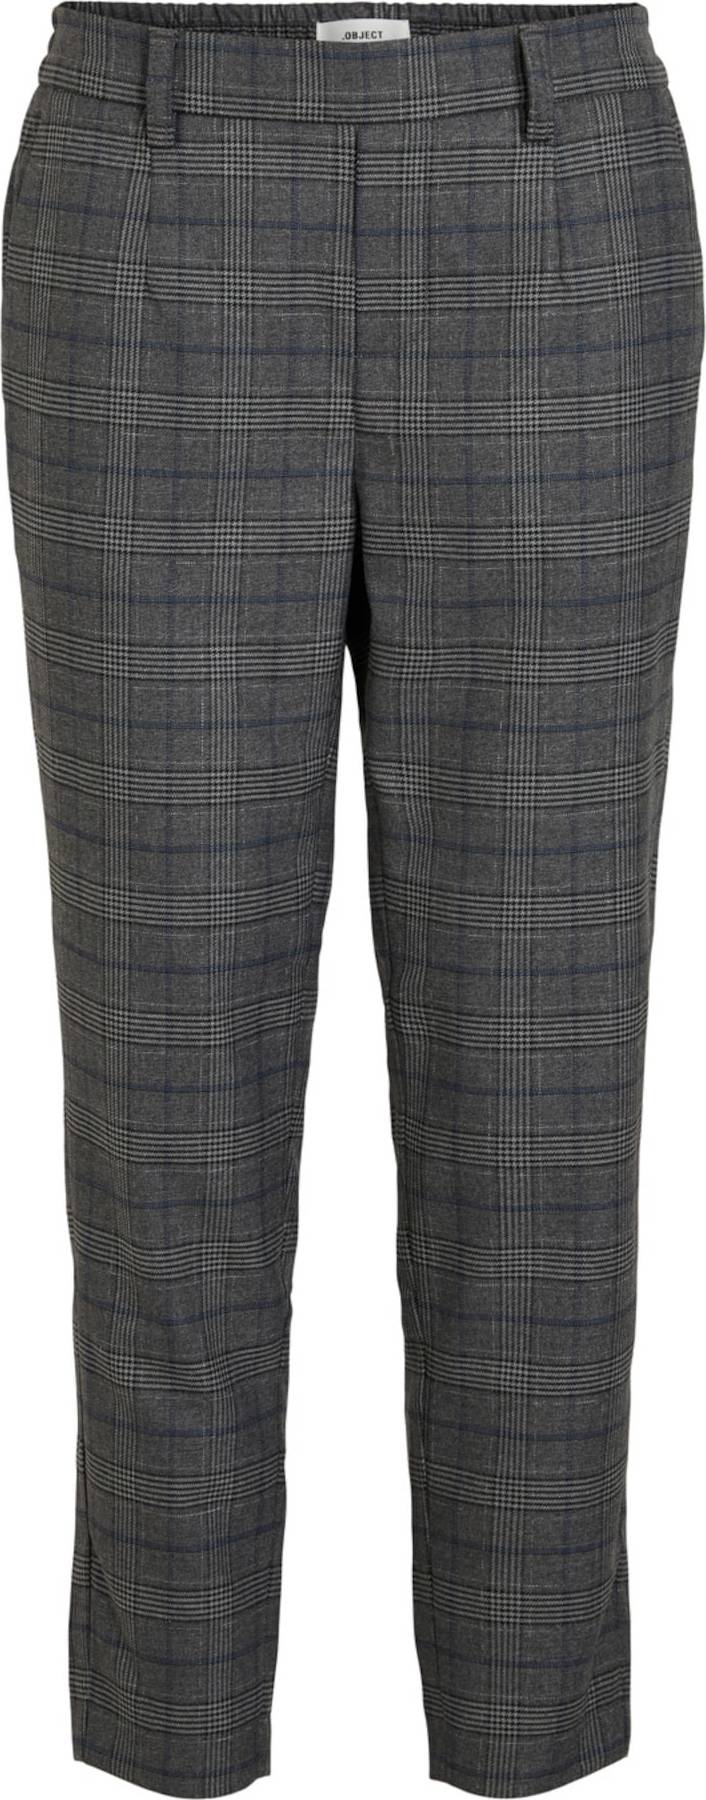 OBJECT Chino kalhoty 'Lisa' námořnická modř / šedá / grafitová / černá